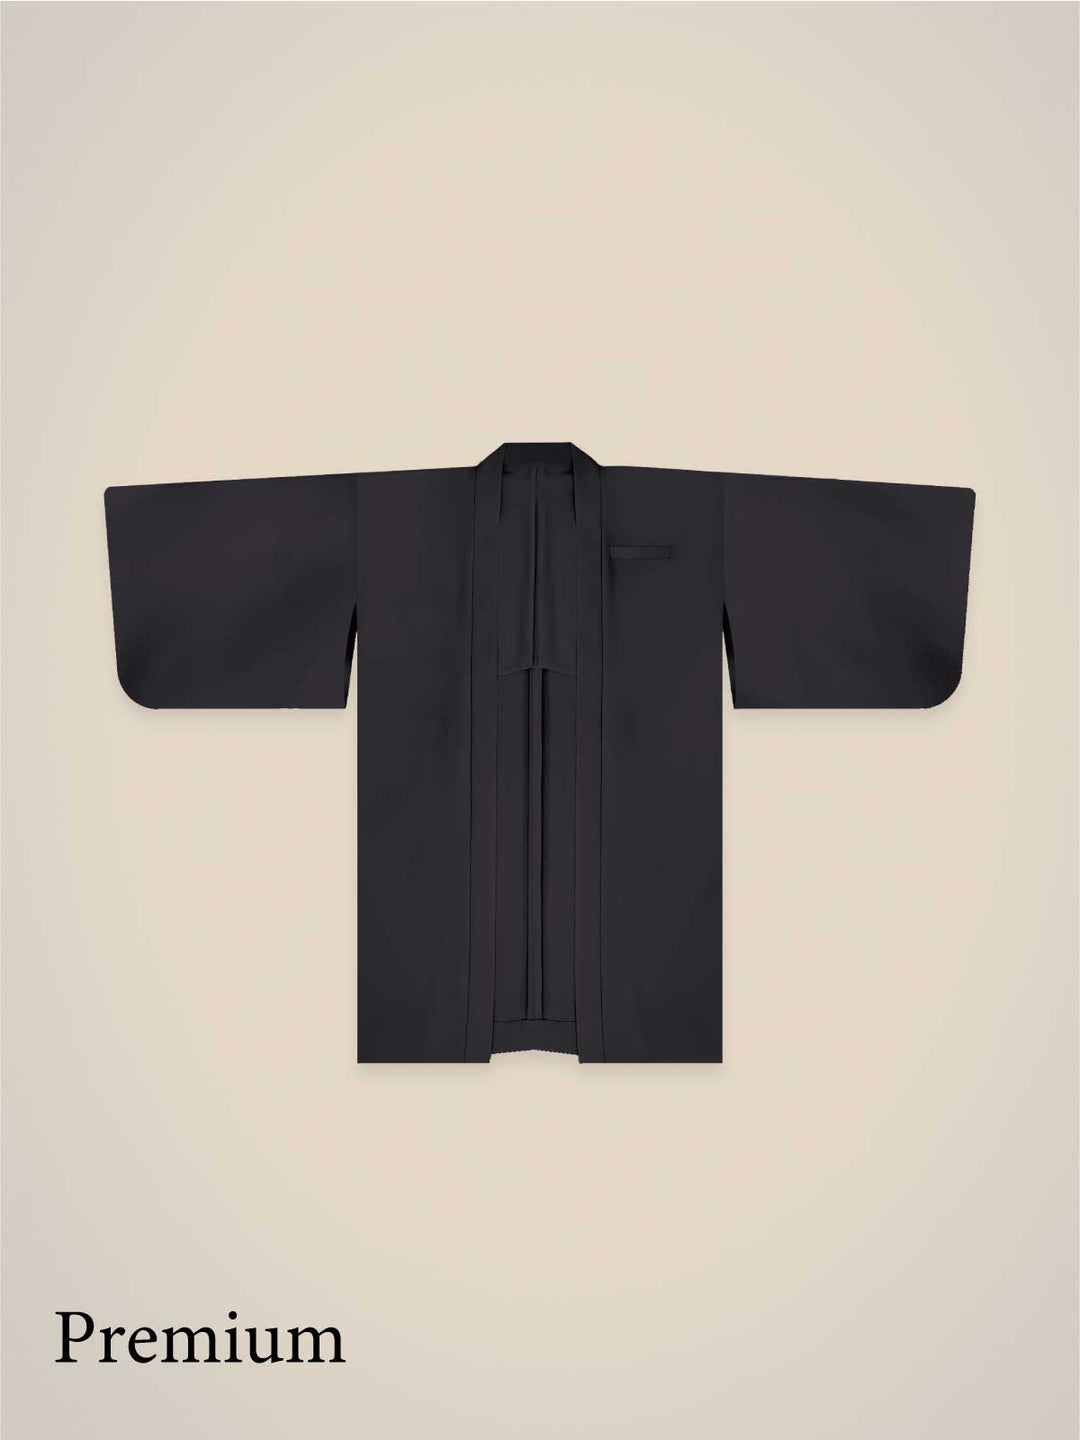 Samurai Mode Jacket -Premium Wool-